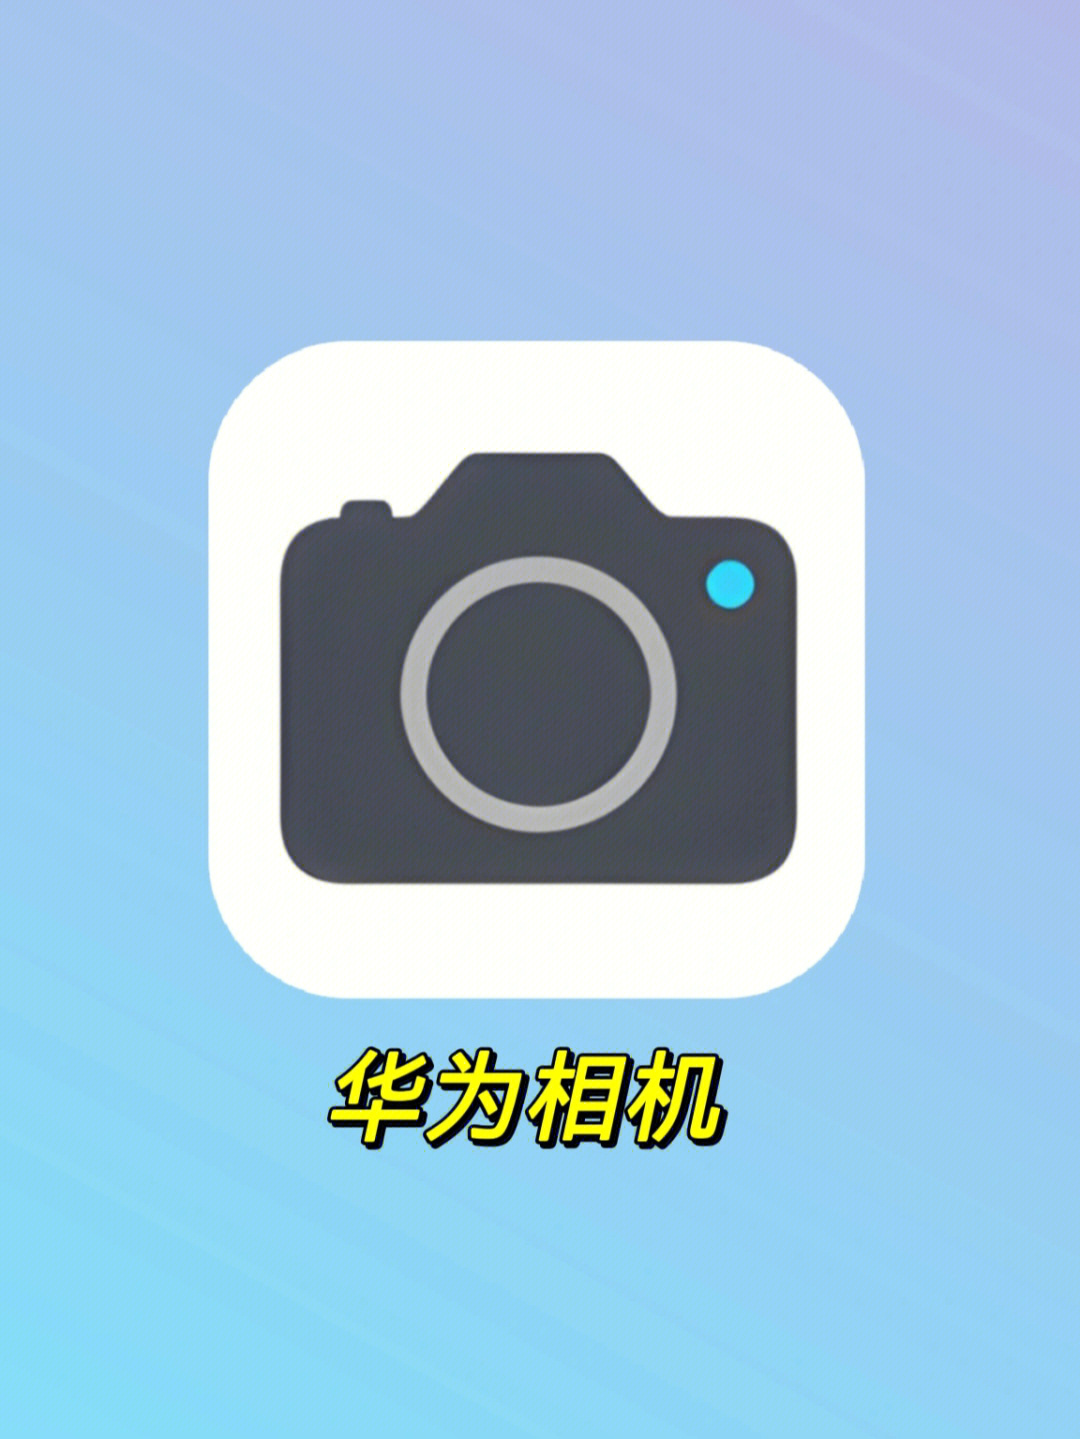 huji相机 软件图片